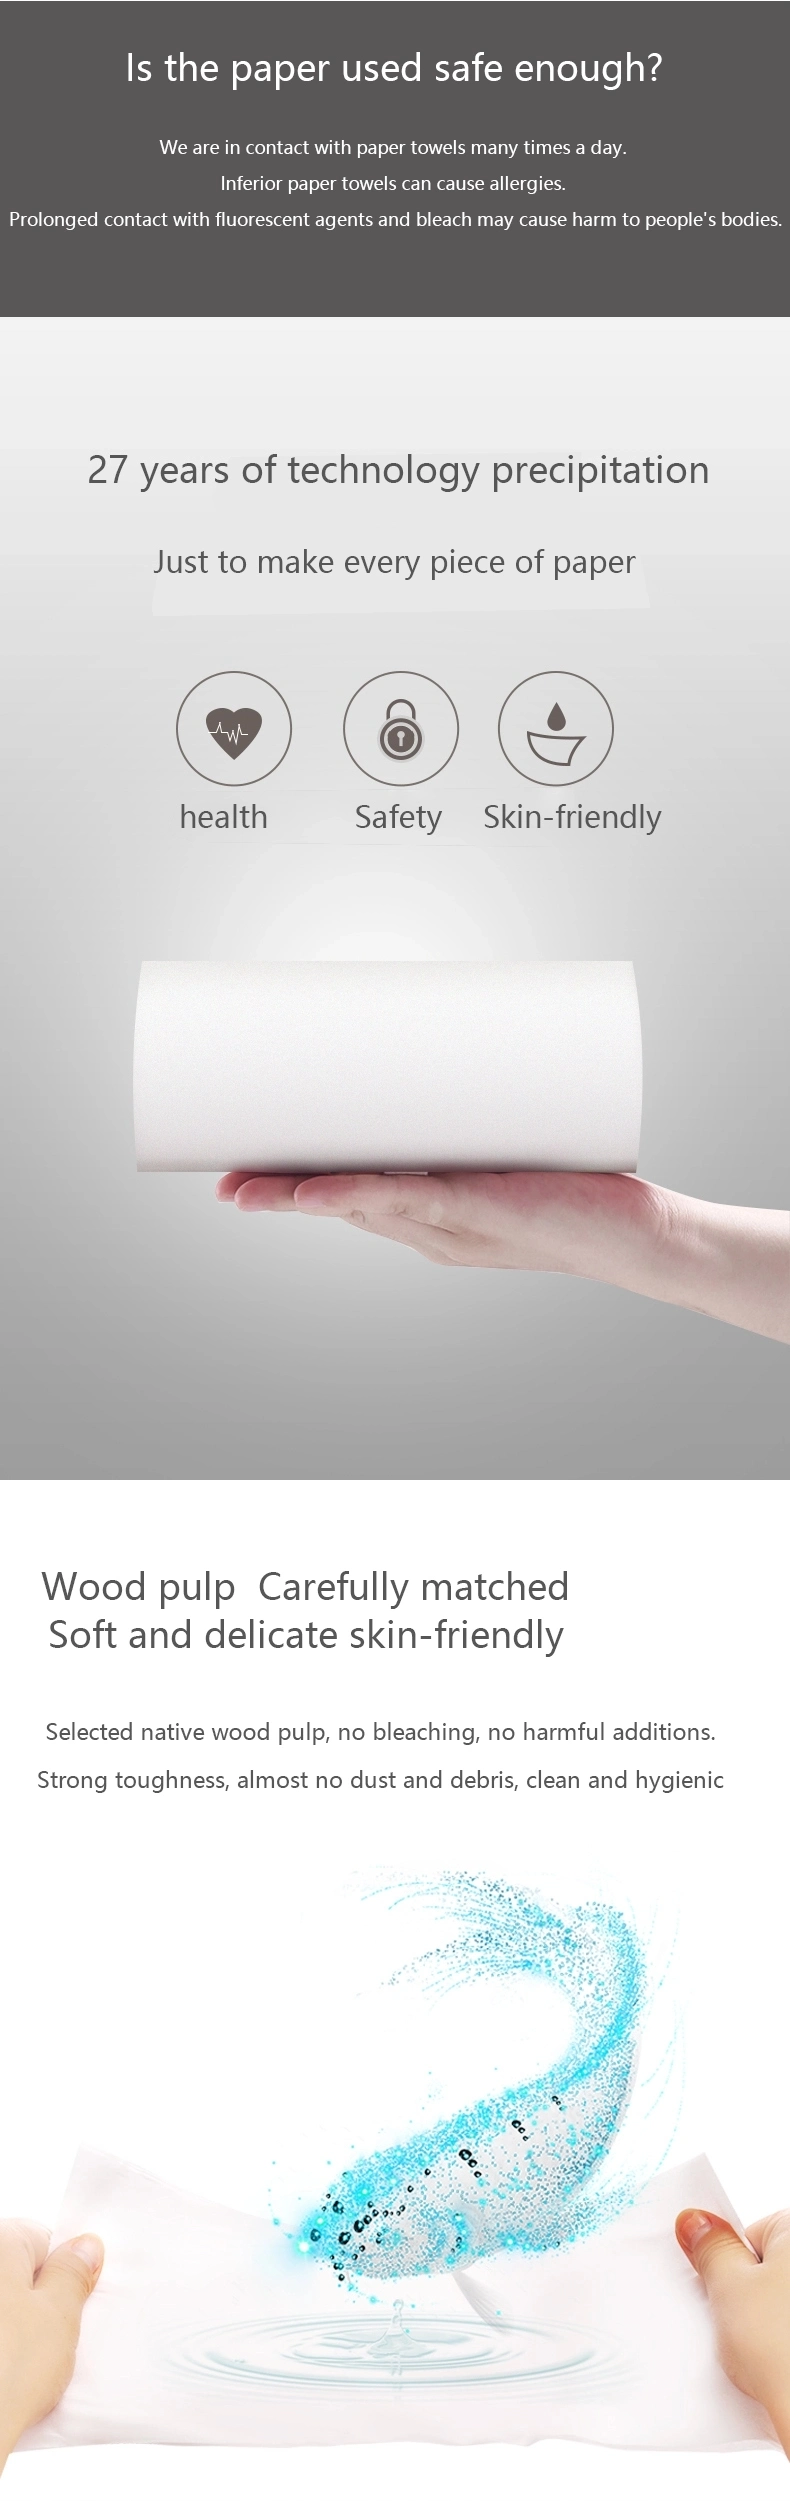 Wholesale Bulk Toilet Paper Soft Bambootoilet Tissue Paper Disposable Toilet Paper